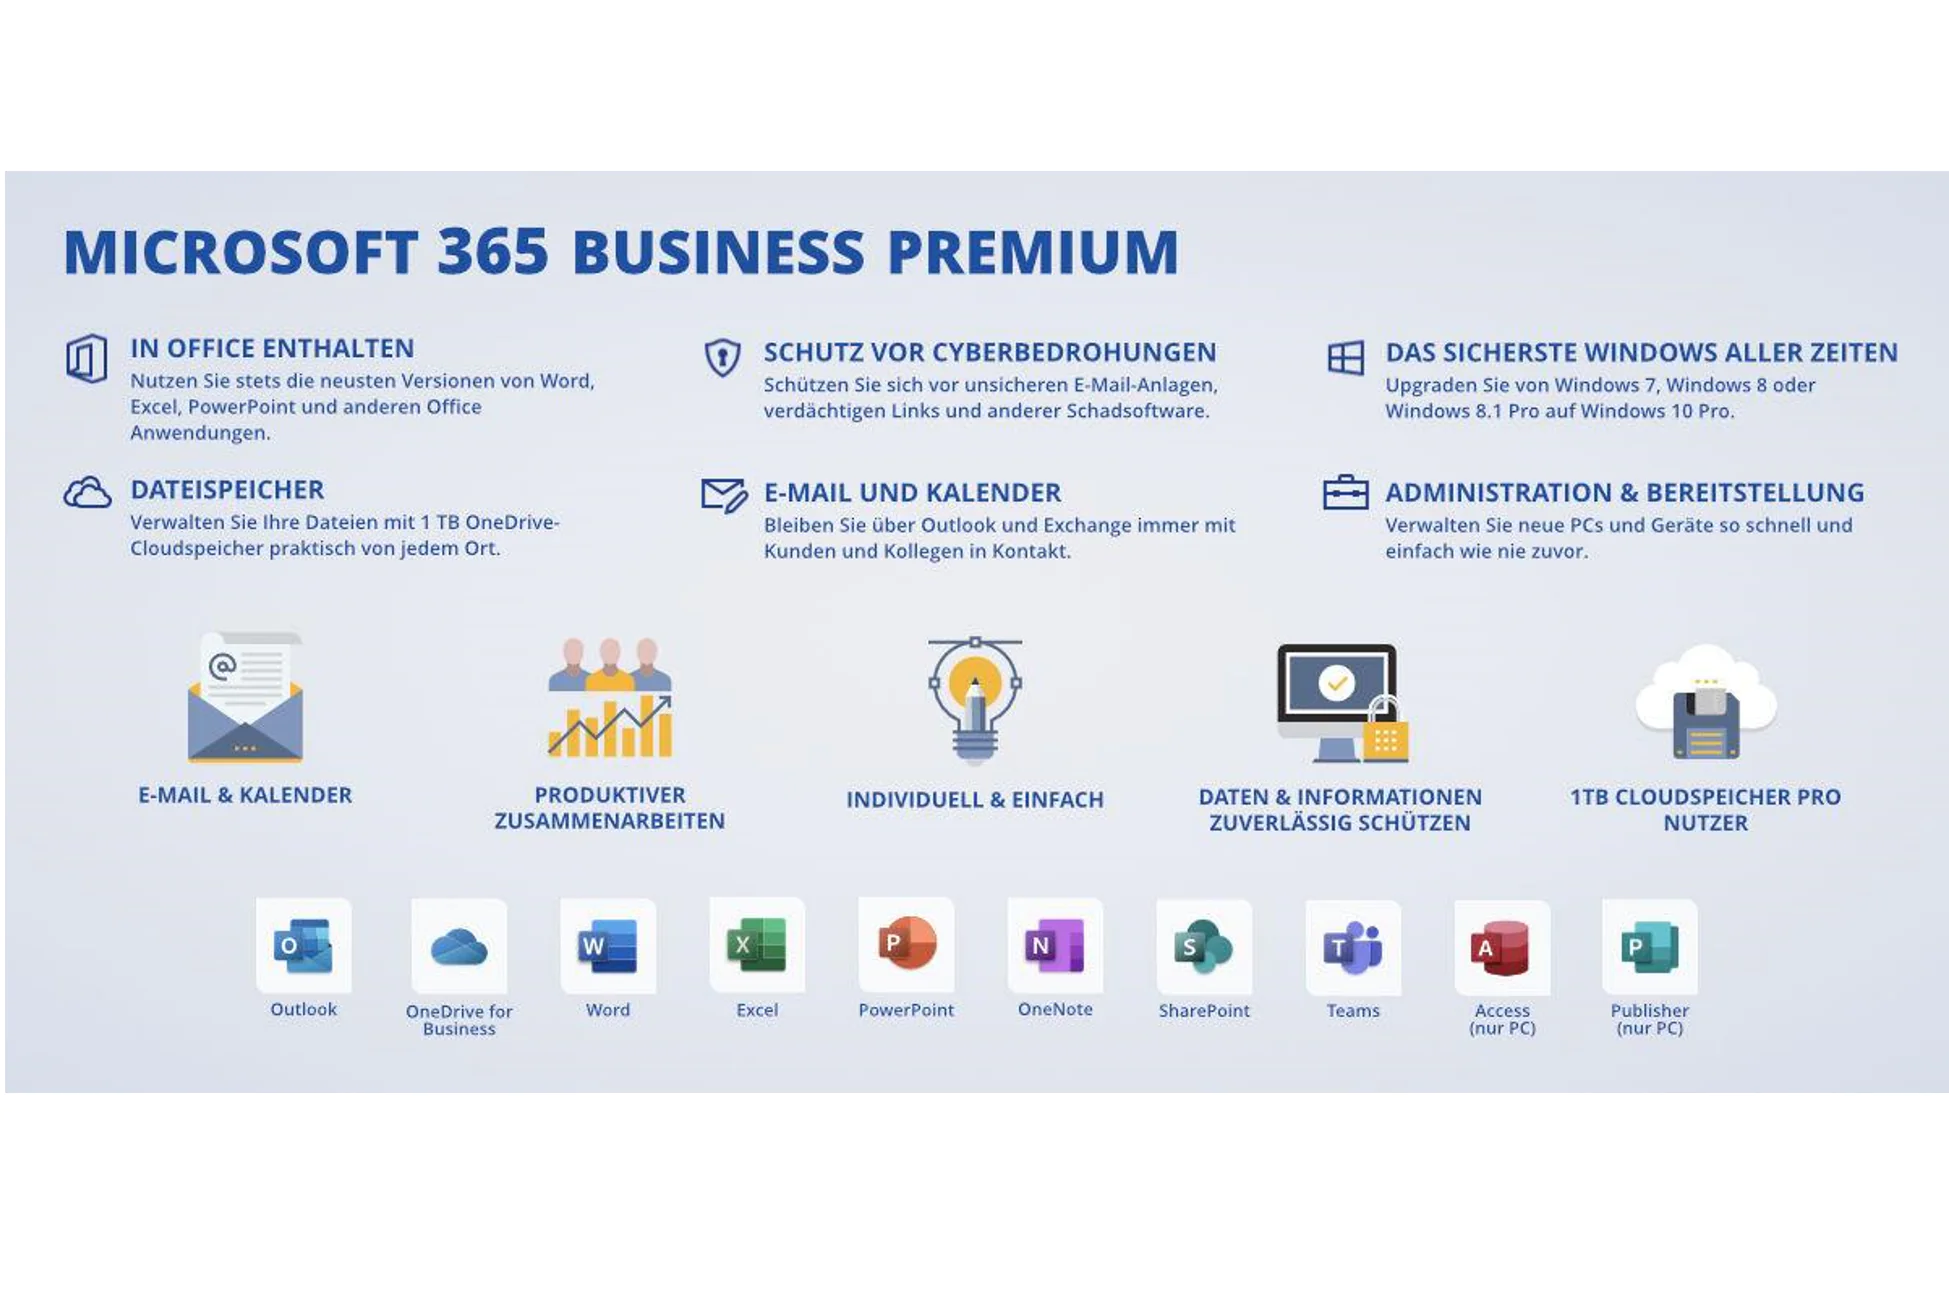 Auflistung der Vorteile und Anwendungen des Microsoft 365 Business Premium Plans